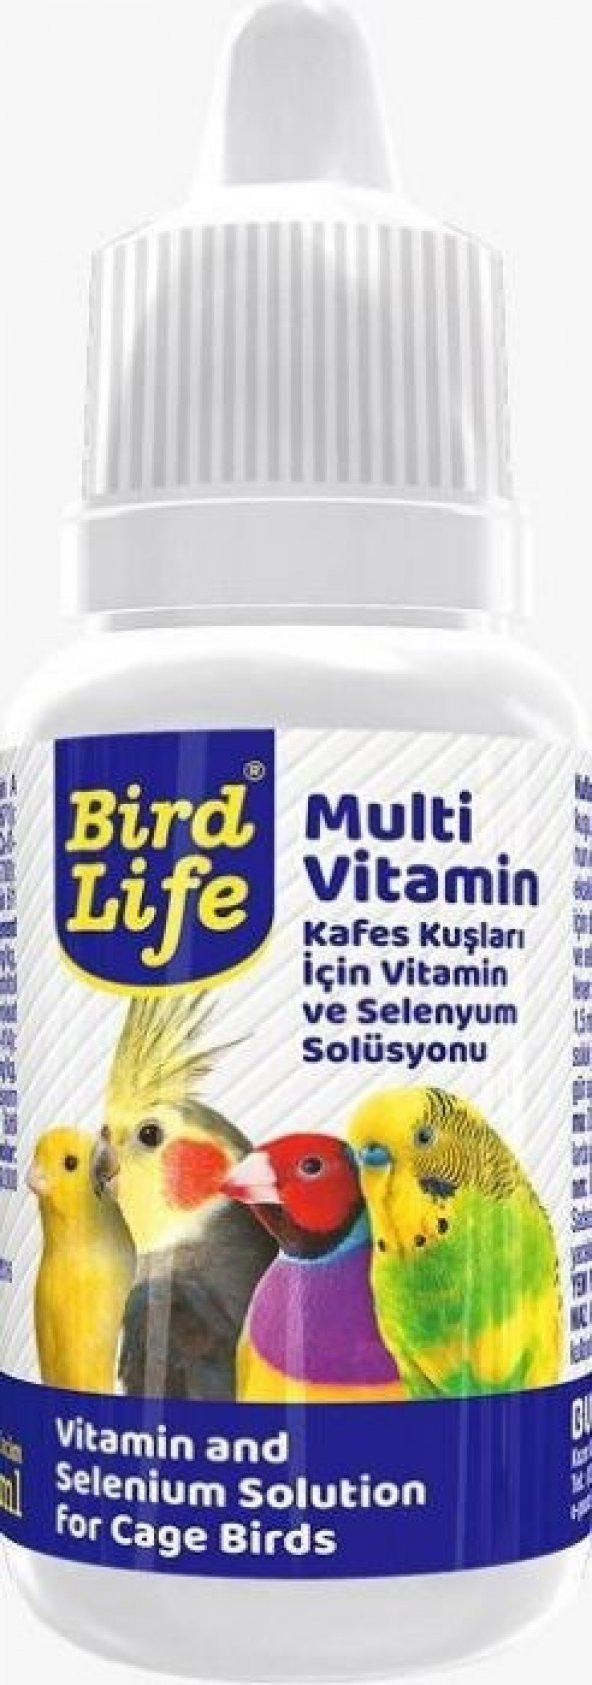 Birdlife Kuş Vitamini, Multivitamin